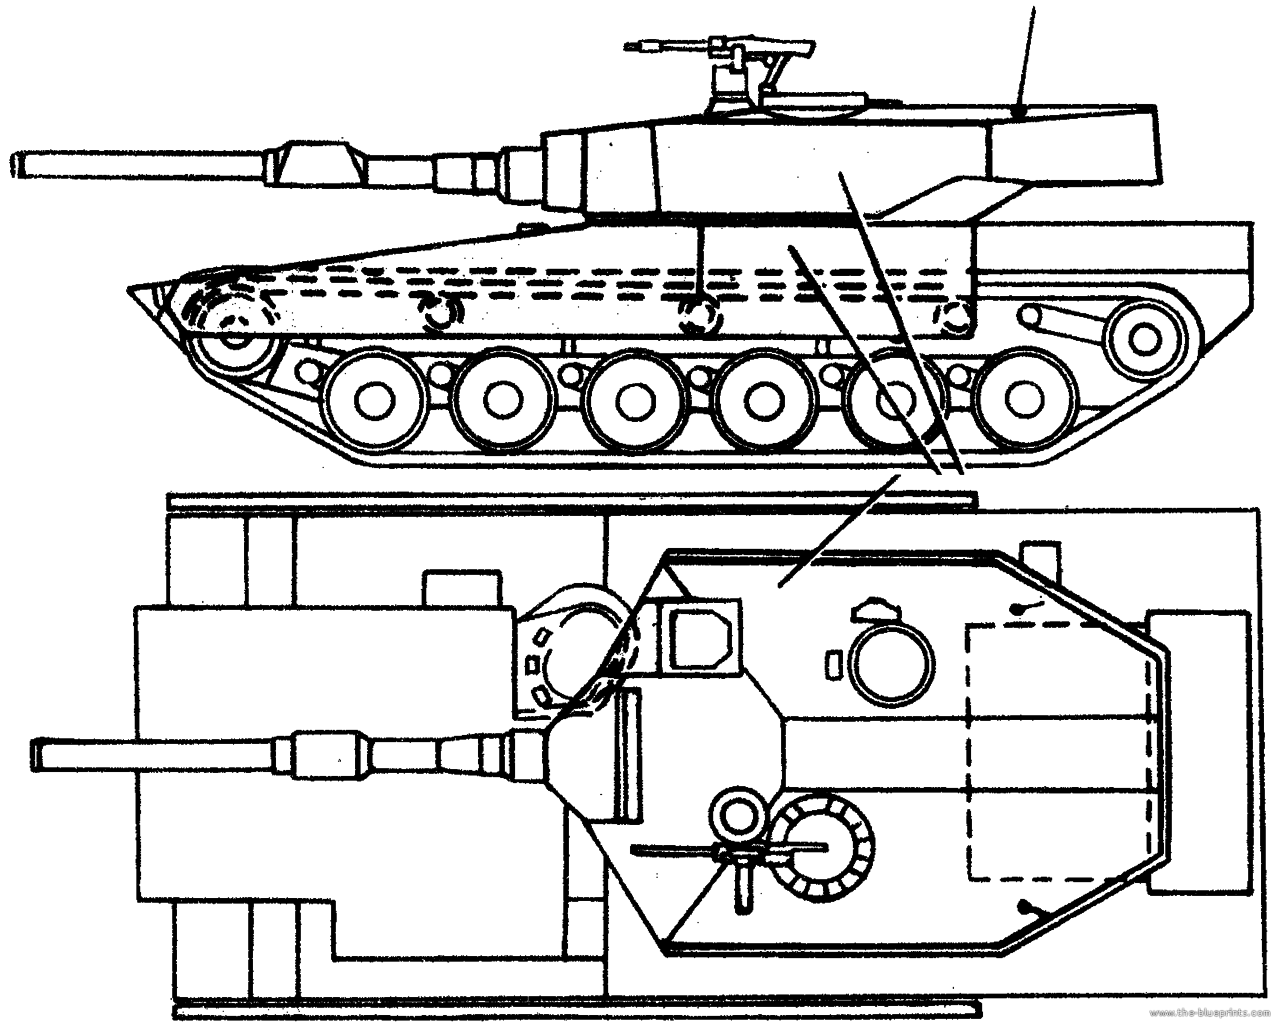 Чертеж танка. Xm1 чертежи. Челленджер танк чертеж. Чертежи танка т-14 Армата. Чертежи танка т-64бм Булат.